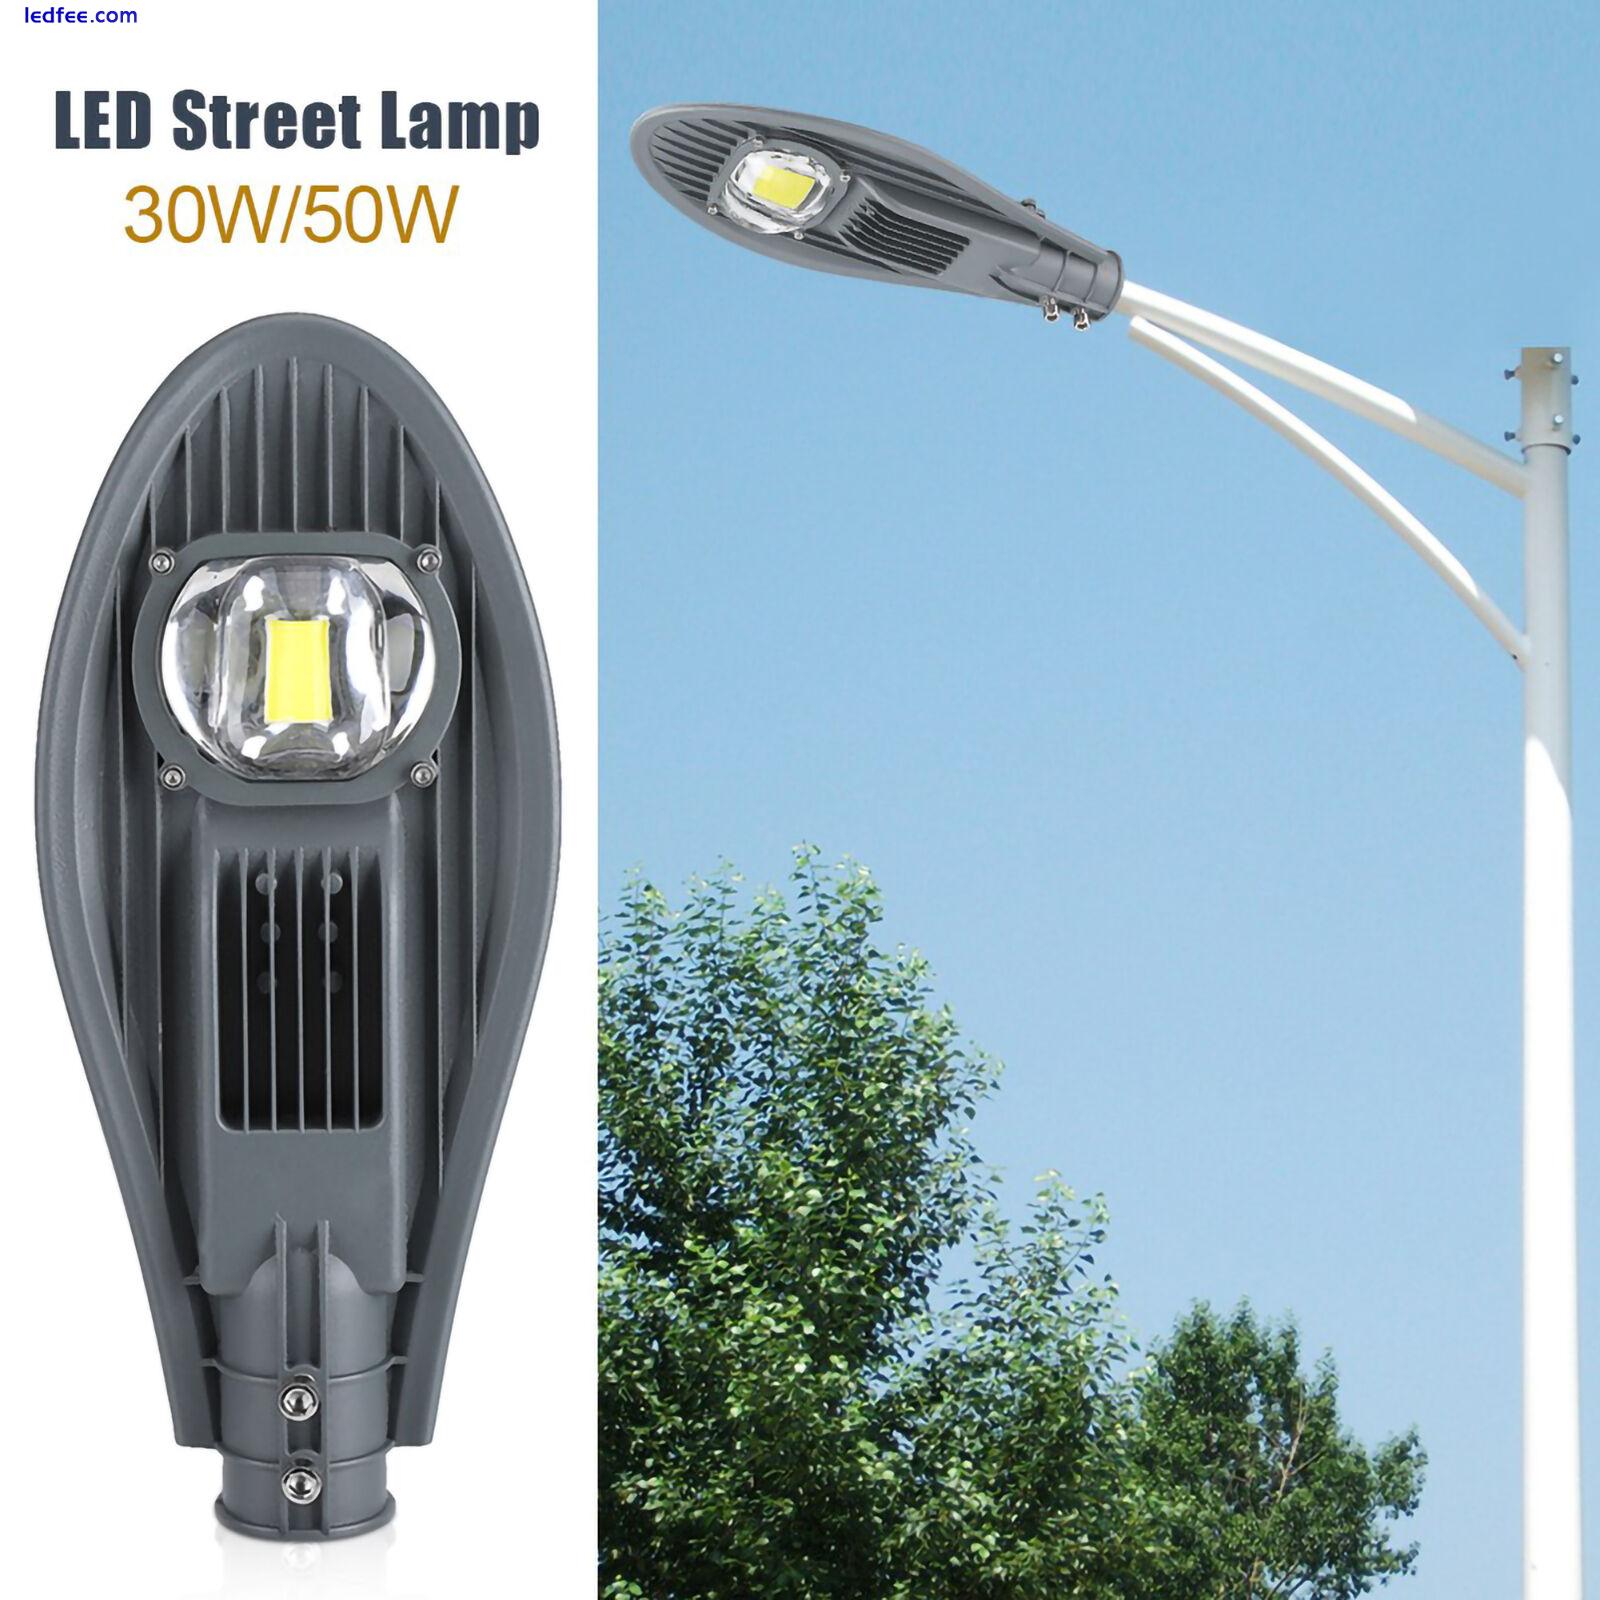 LED Road Street Flood Light Lamp For Outdoor Garden Yard Lamp Lighting 0 